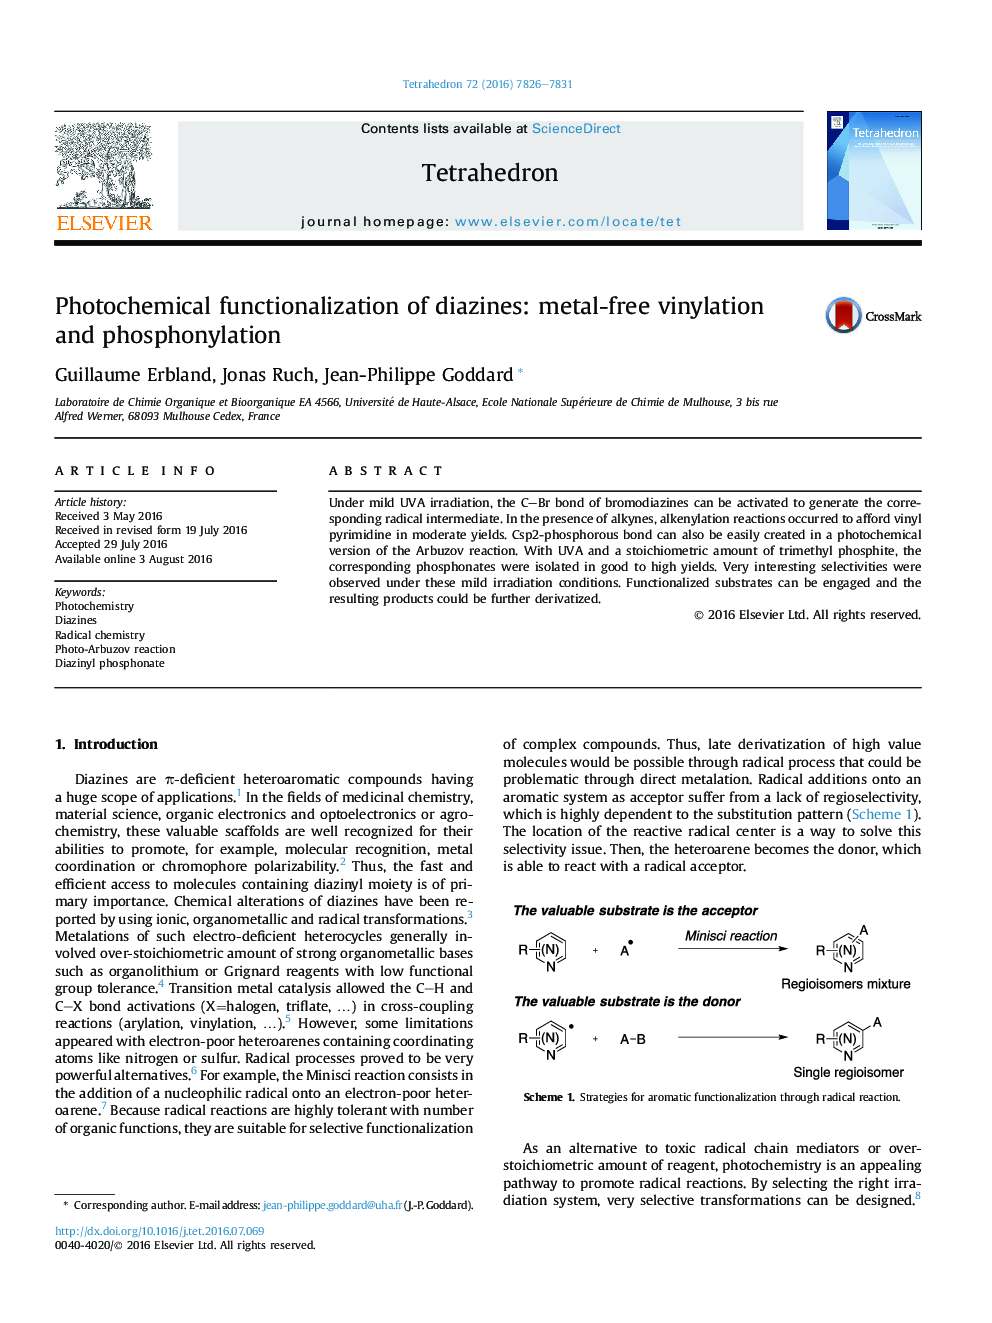 Photochemical functionalization of diazines: metal-free vinylation and phosphonylation